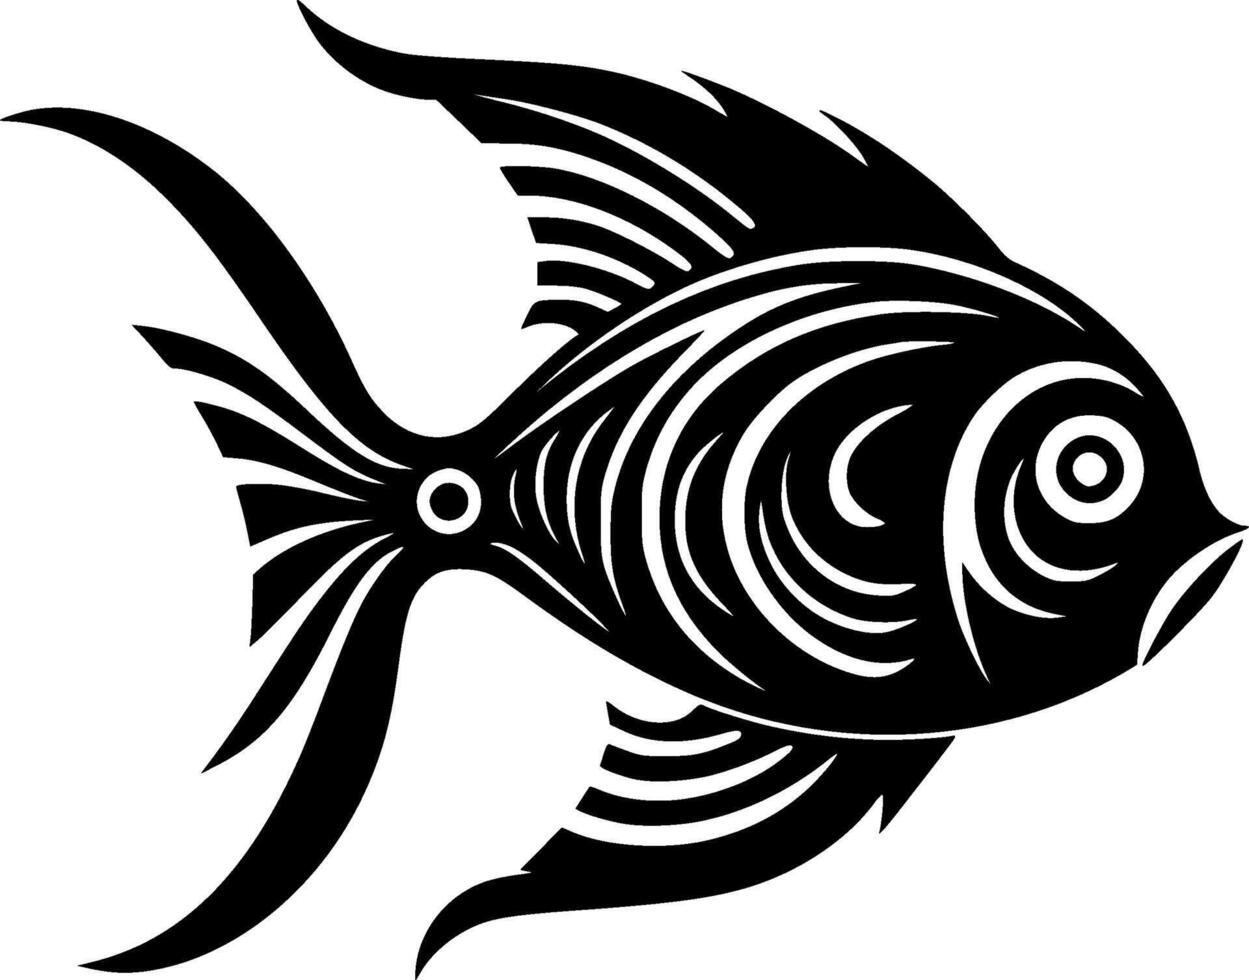 vis, zwart en wit illustratie vector